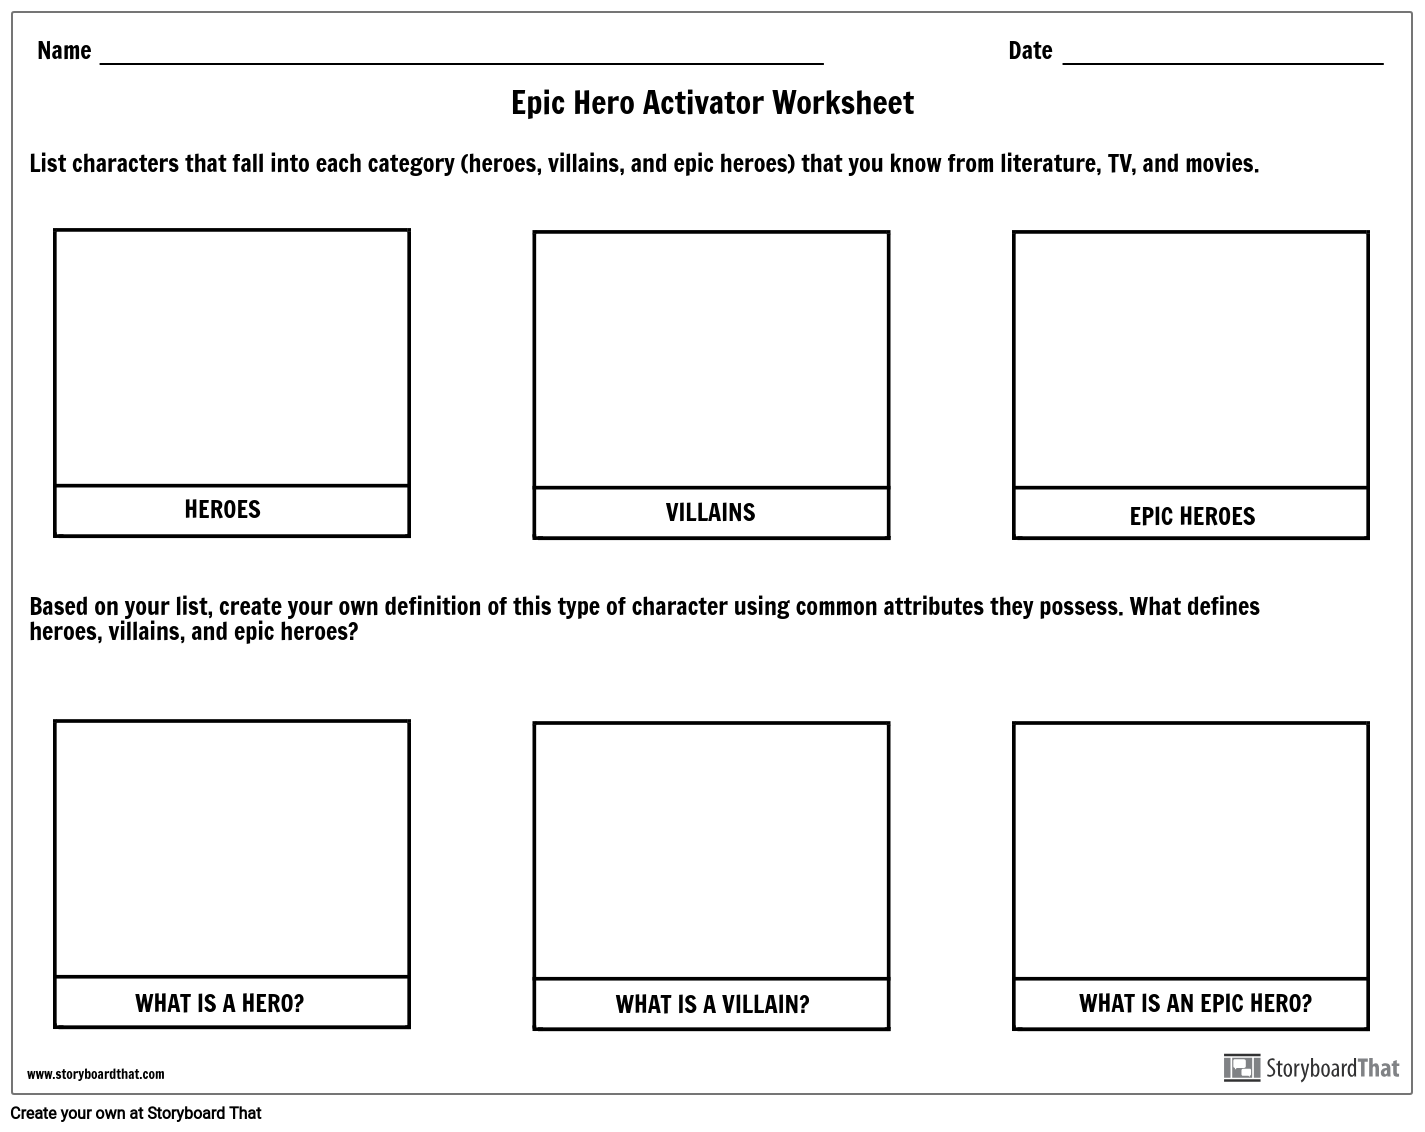 Epic Hero Activator Worksheet